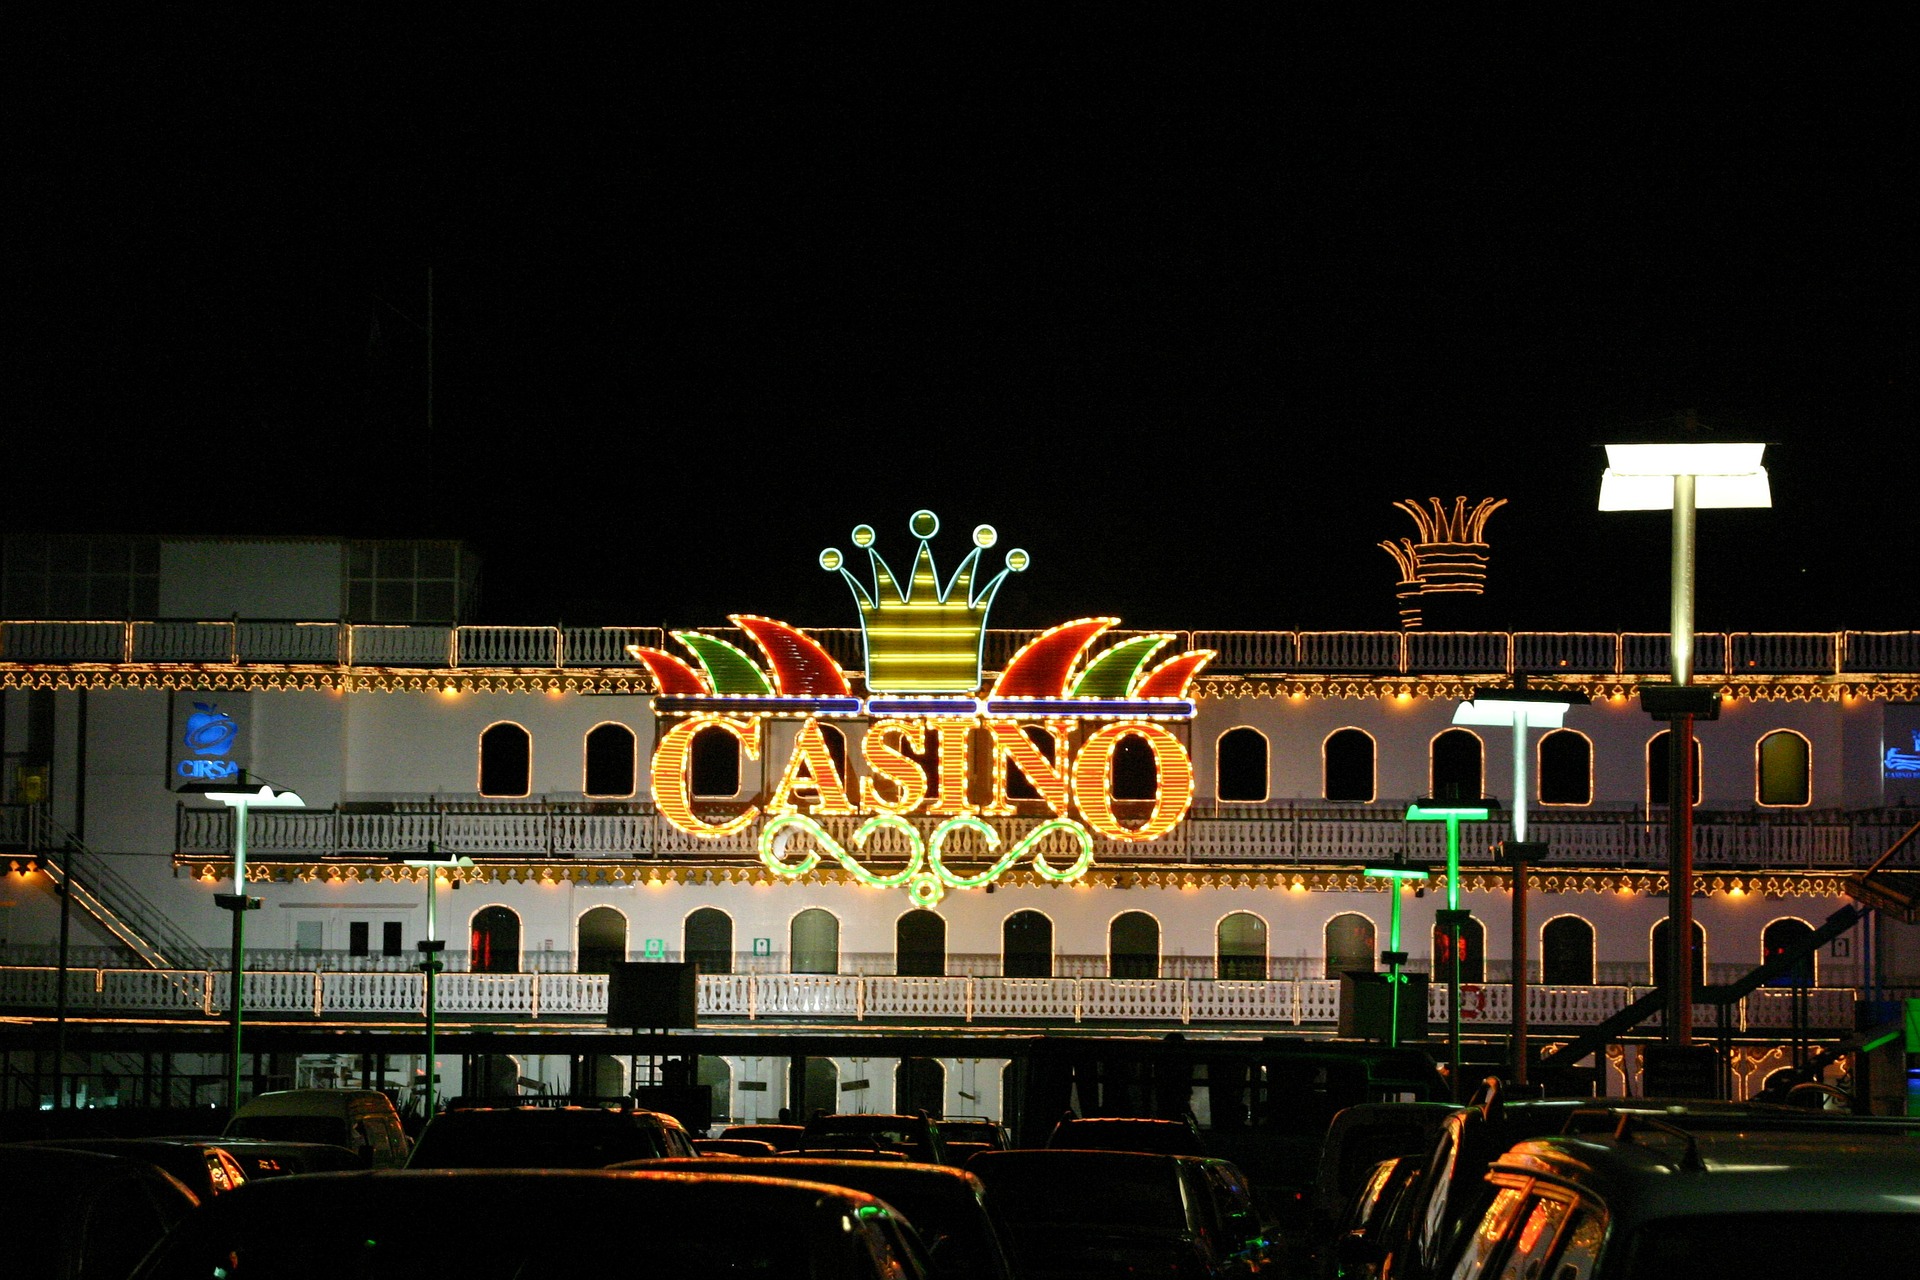 mejores casinos online Argentina Cambios: 5 consejos prácticos